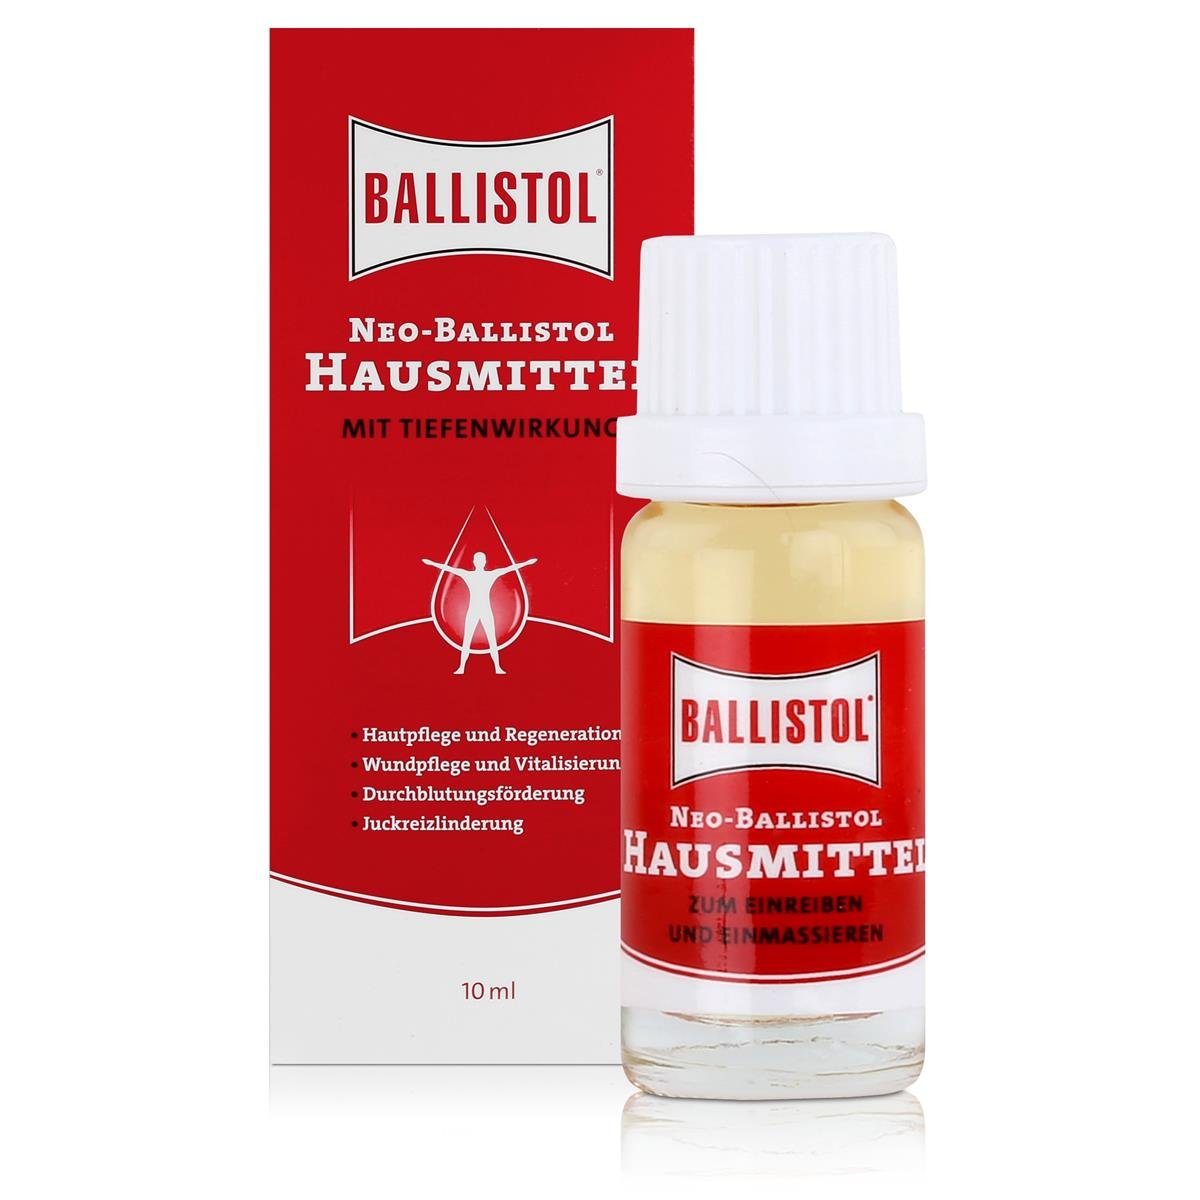 Tiefenwirkung Pack) Massageöl mit Ballistol Neo-Hausmittel Ballistol (2er 10ml